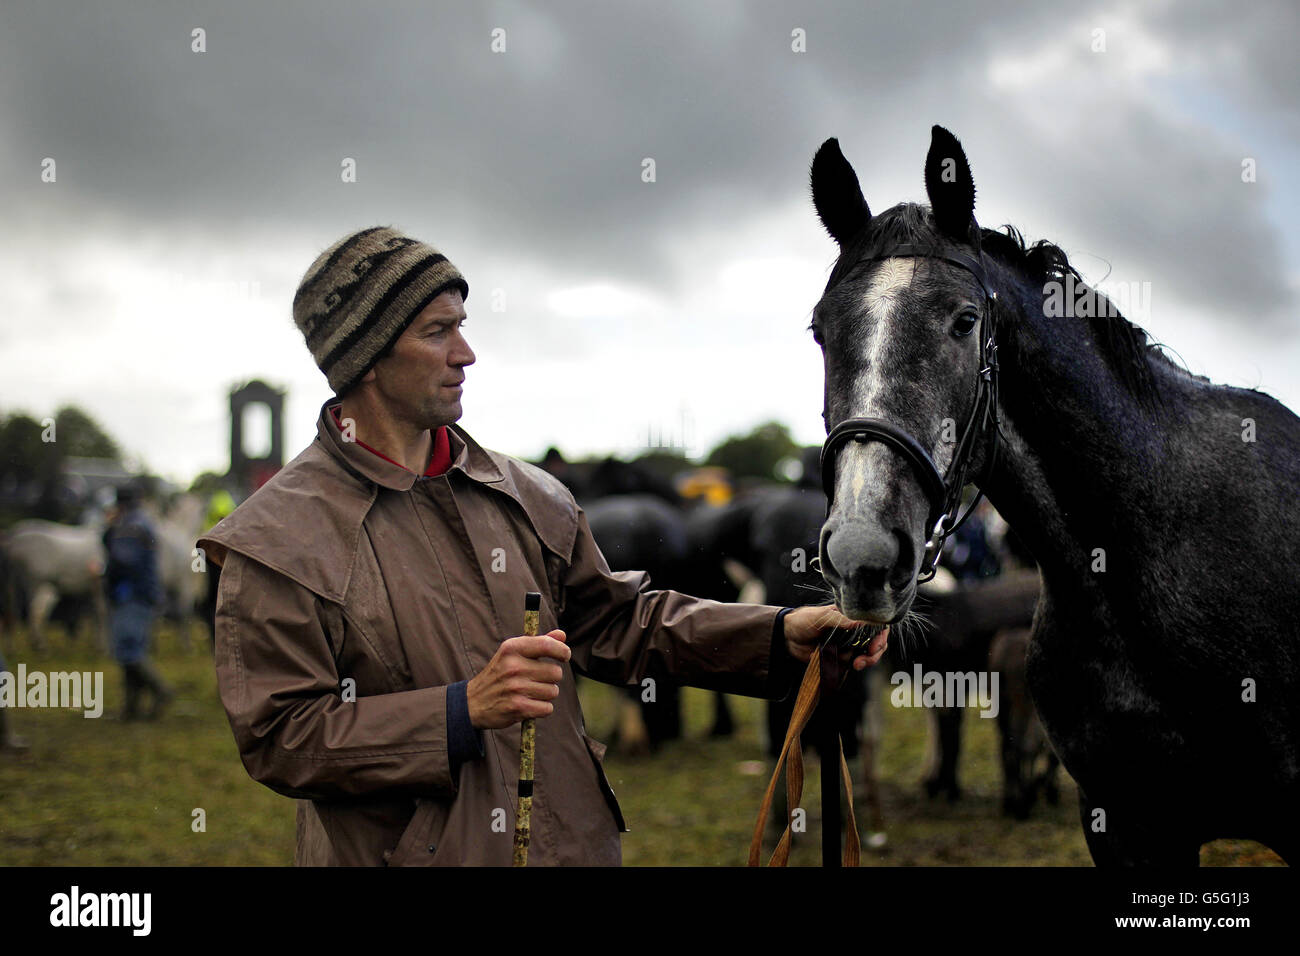 Sean O'Neill attend de vendre son cheval sur le champ d'exposition à la Ballinasloe Horse Fair à Co. Galway, en Irlande. Banque D'Images